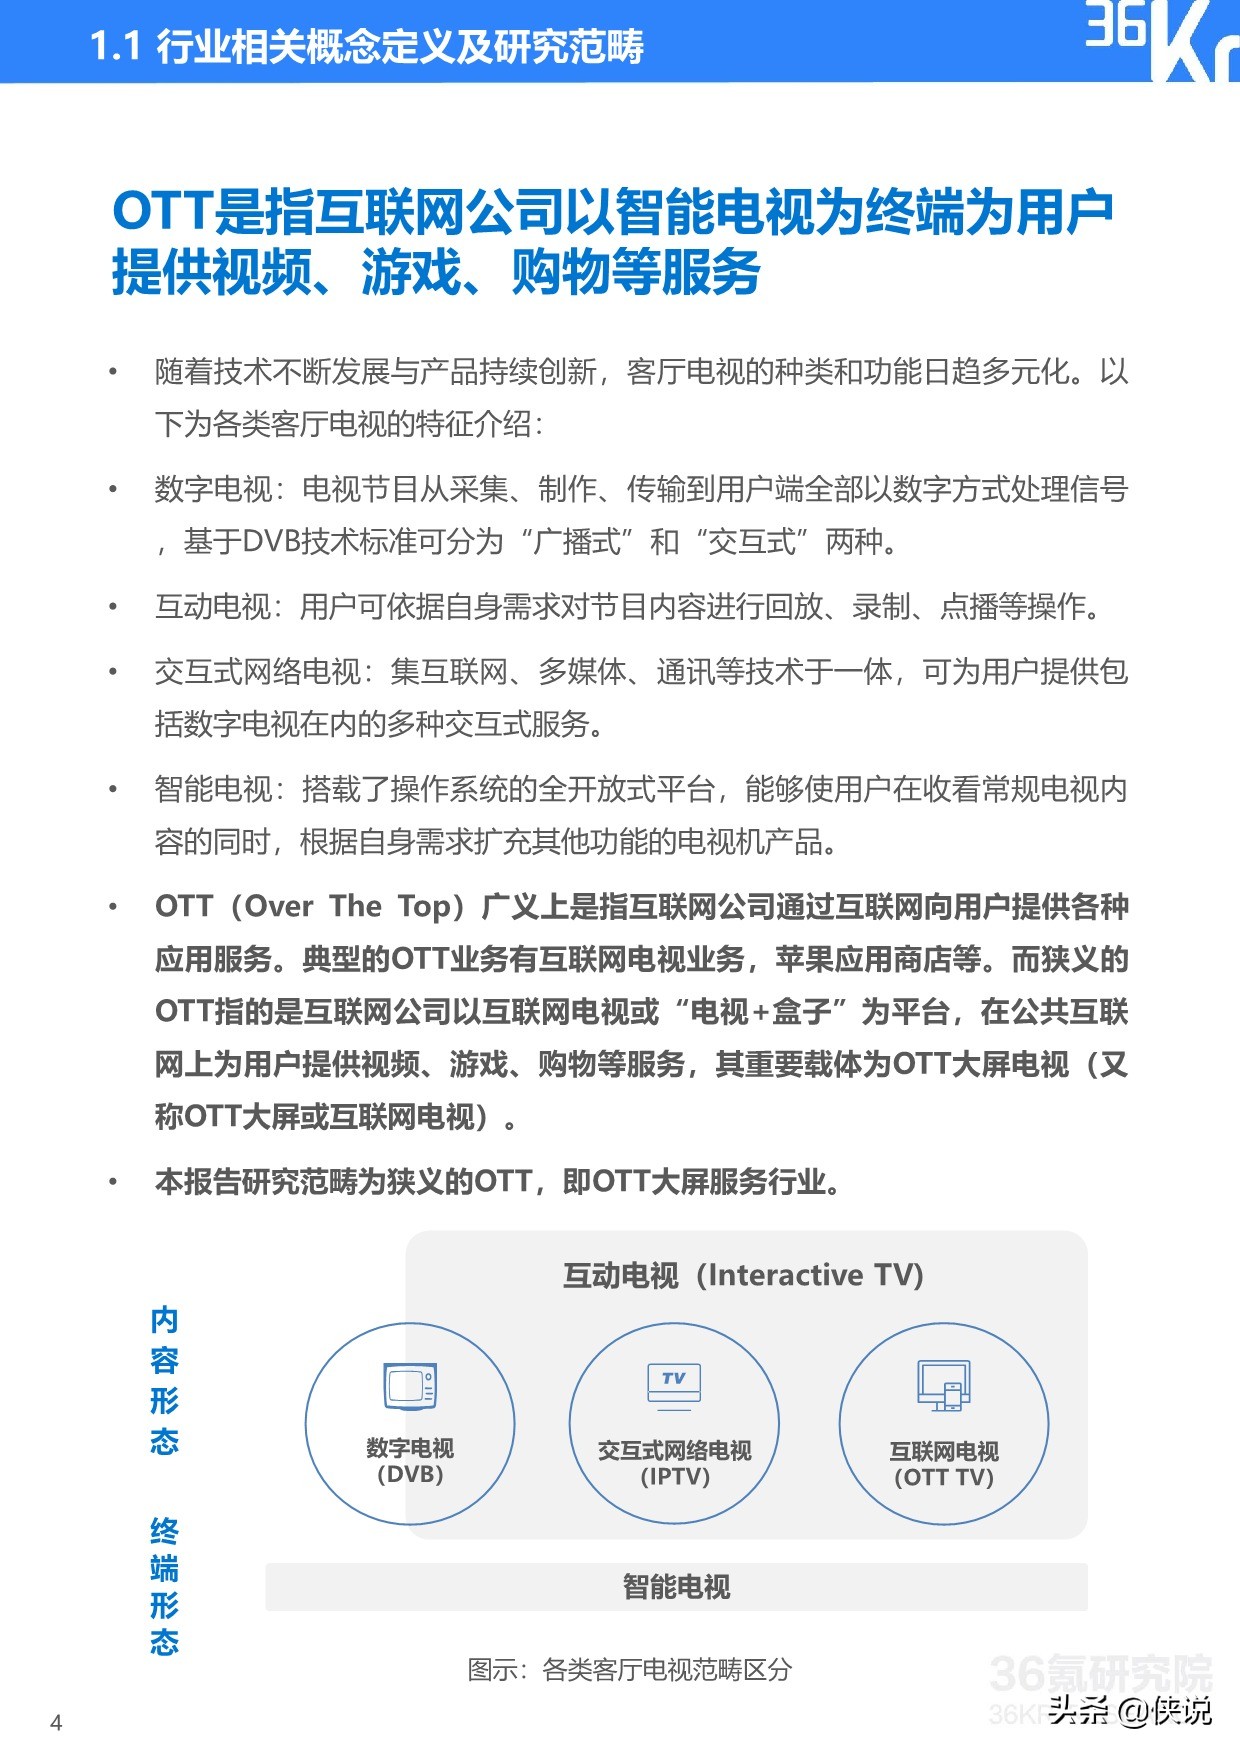 36Kr：2020年中国OTT大屏服务行业研究报告